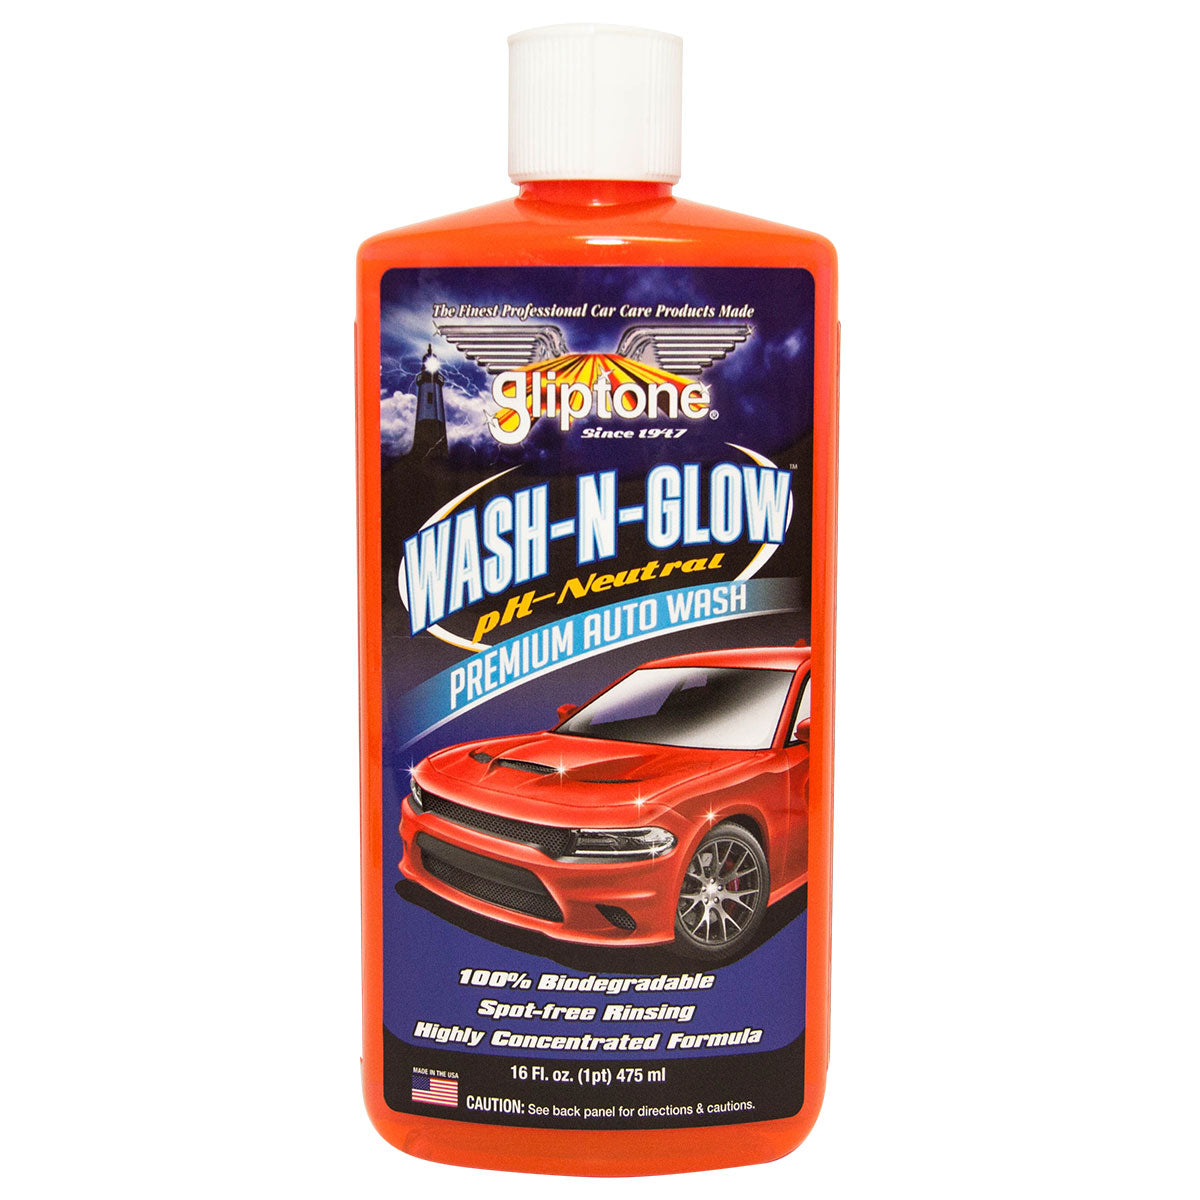 Wash N Glow Premium Auto Wash